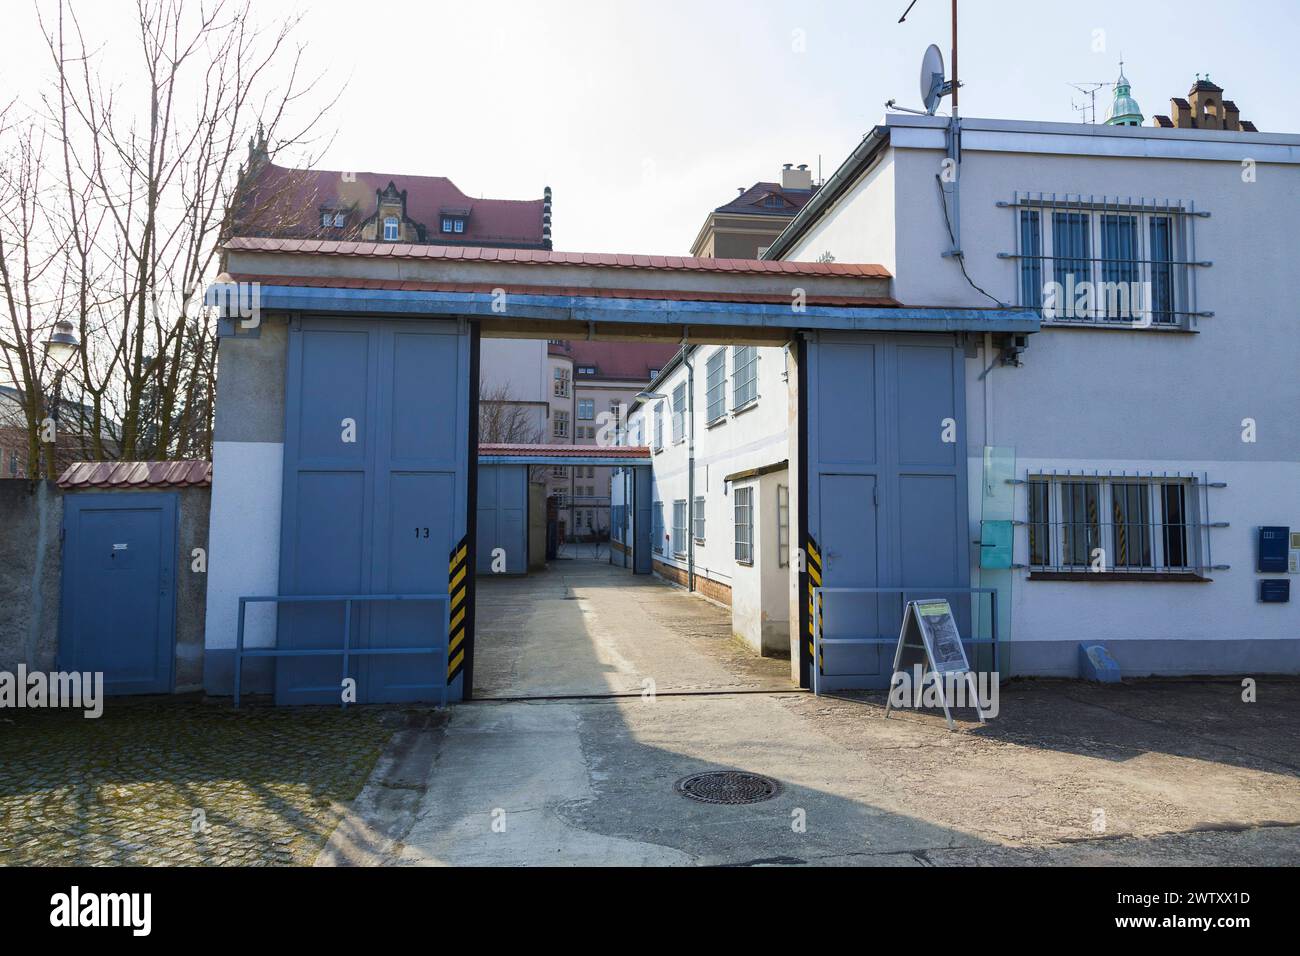 Bautzen Stasi Knast Gedenkstätte IM sächsischen Bautzen gab es historisch zwei Gefängnisse, die heute insbesondere für Unrecht und politische Verfolgung in der Sowjetischen Besatzungszone und in der DDR bekannt sind. Zwischen 1902 und 1906 wurde an der Lessingstraße in der Bautzener Ostvorstadt ein großzügiges neues Gerichtsgebäude errichtet, dem ein Vollzugskomplex angeschlossen War. Dieser umfasste 134 Einzel-, 23 Dreimann-, 2 Durchgangs-, 4 Kranken- e 5 Arrestzellen. Von 1945 bis 1949 diente es der sowjetischen Militärverwaltung als Untersuchungsgefängnis, von wo aus die Verurteilten dire Foto Stock